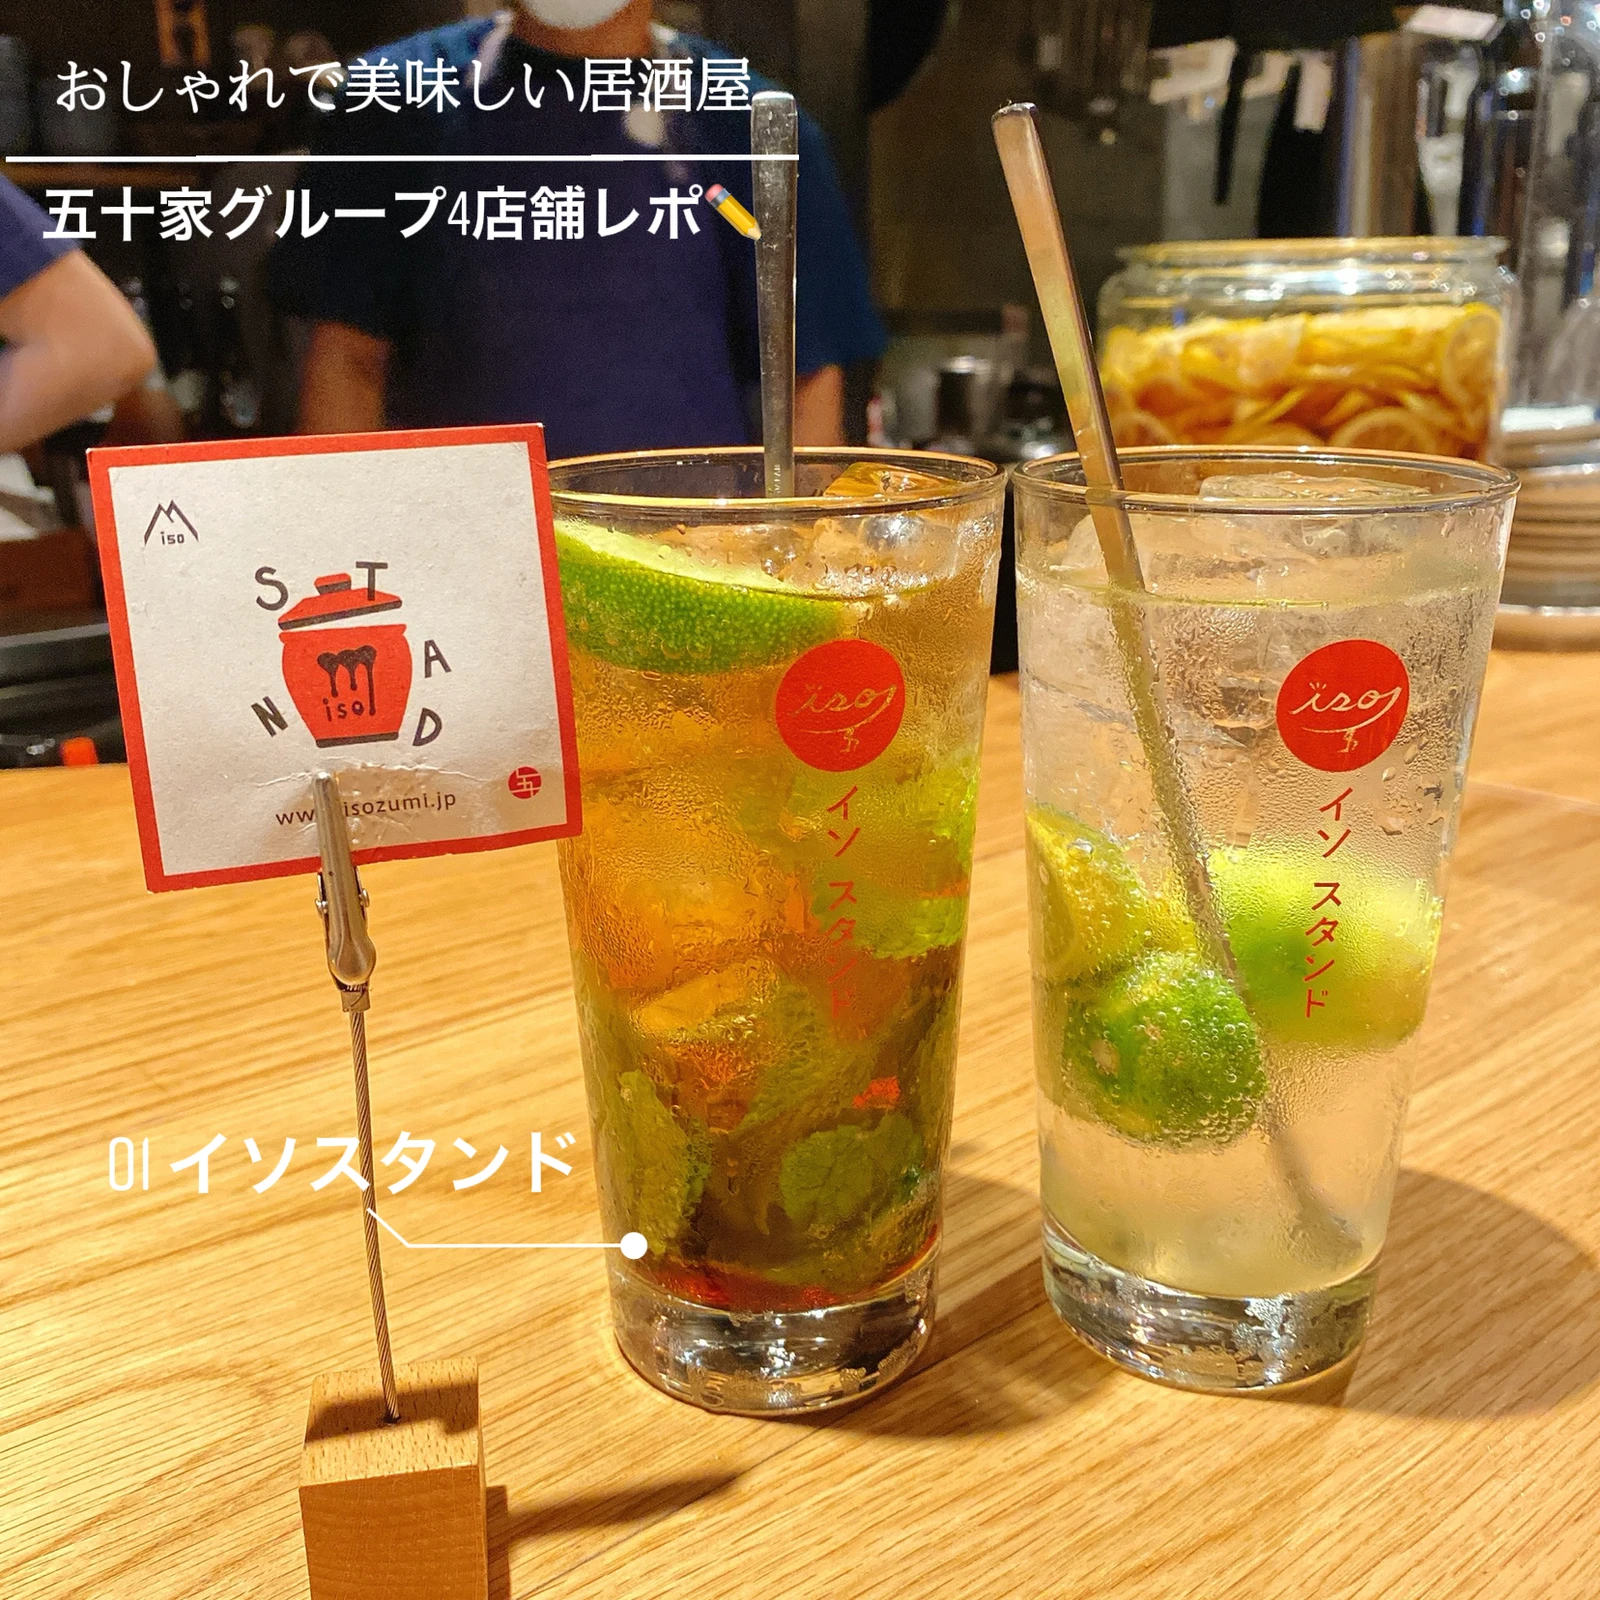 飯テロ おしゃれで美味しい京都の五十家コーポレーションに注目 まぁやんが投稿したフォトブック Lemon8